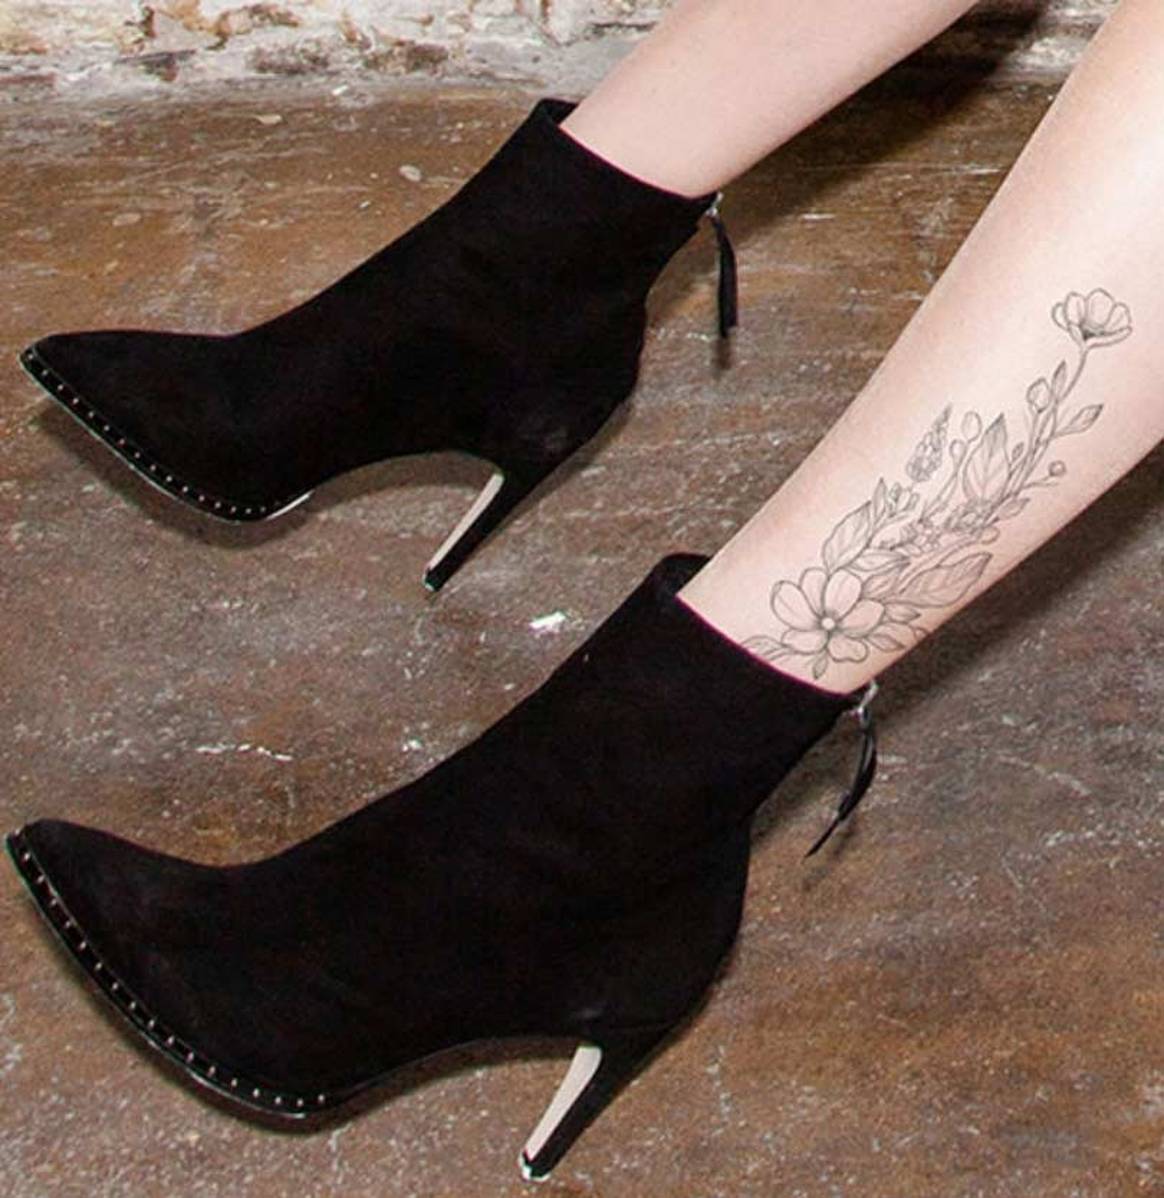 In Bildern: Wolfords neue Strumpfhosen mit exklusiven Tattoos